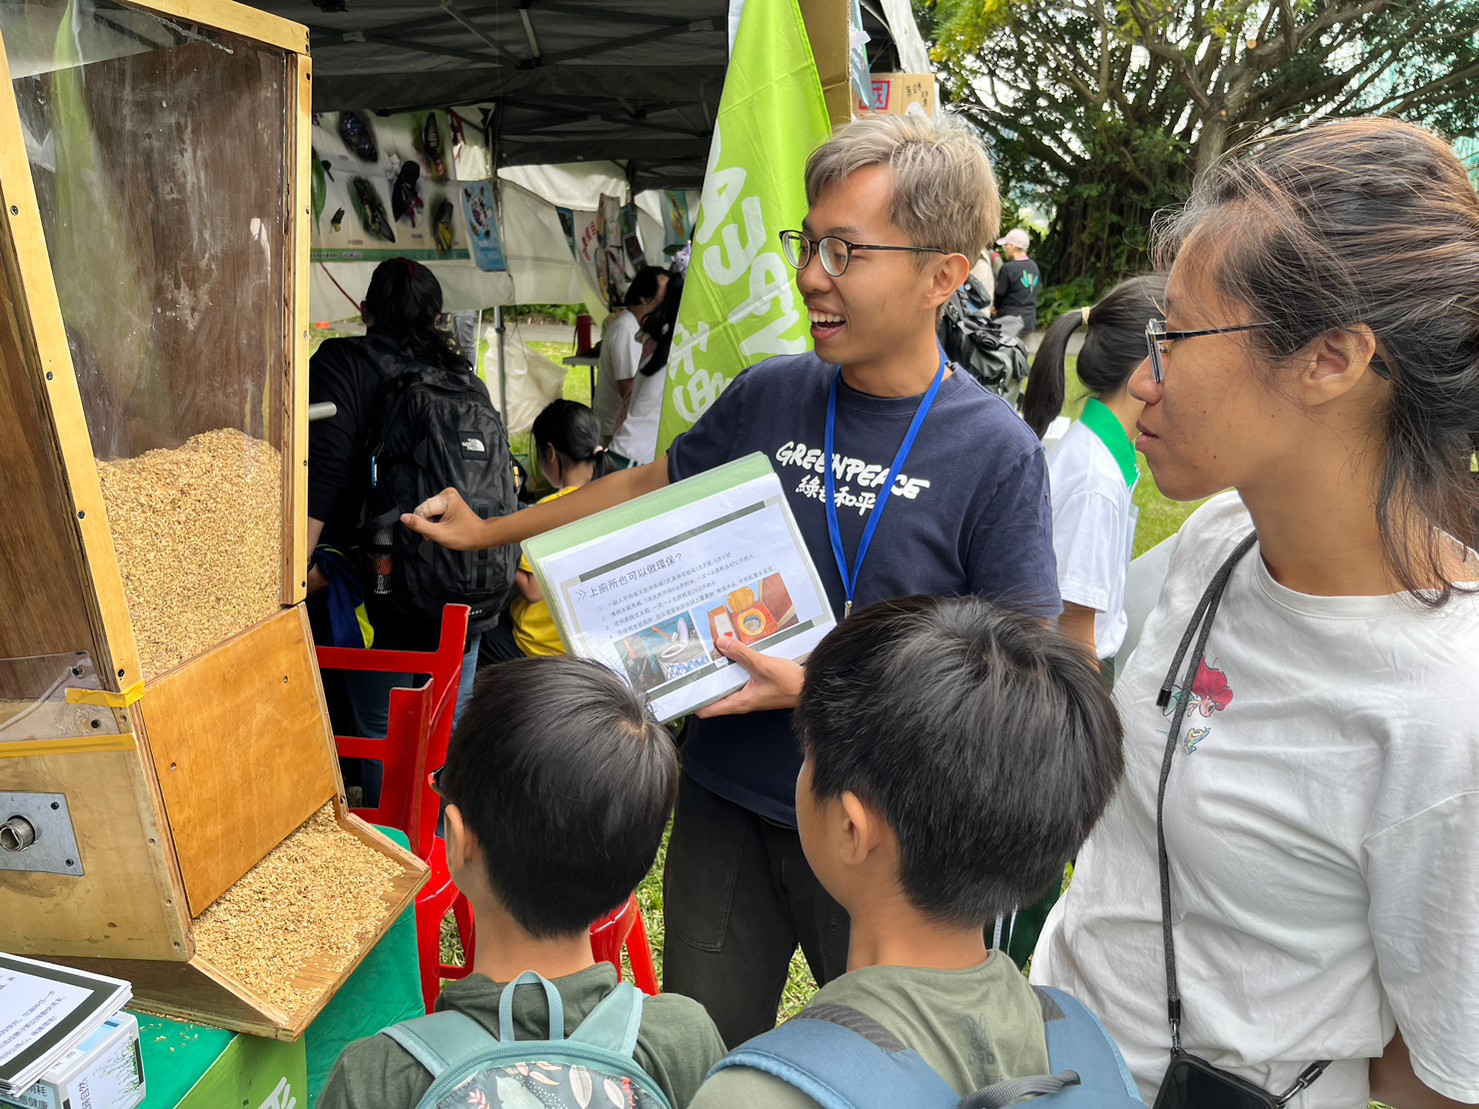 2023年10月21日至 22 日，環境行動志工小組將在臺北國際賞鳥博覽會擺攤展出生態廁所模型。